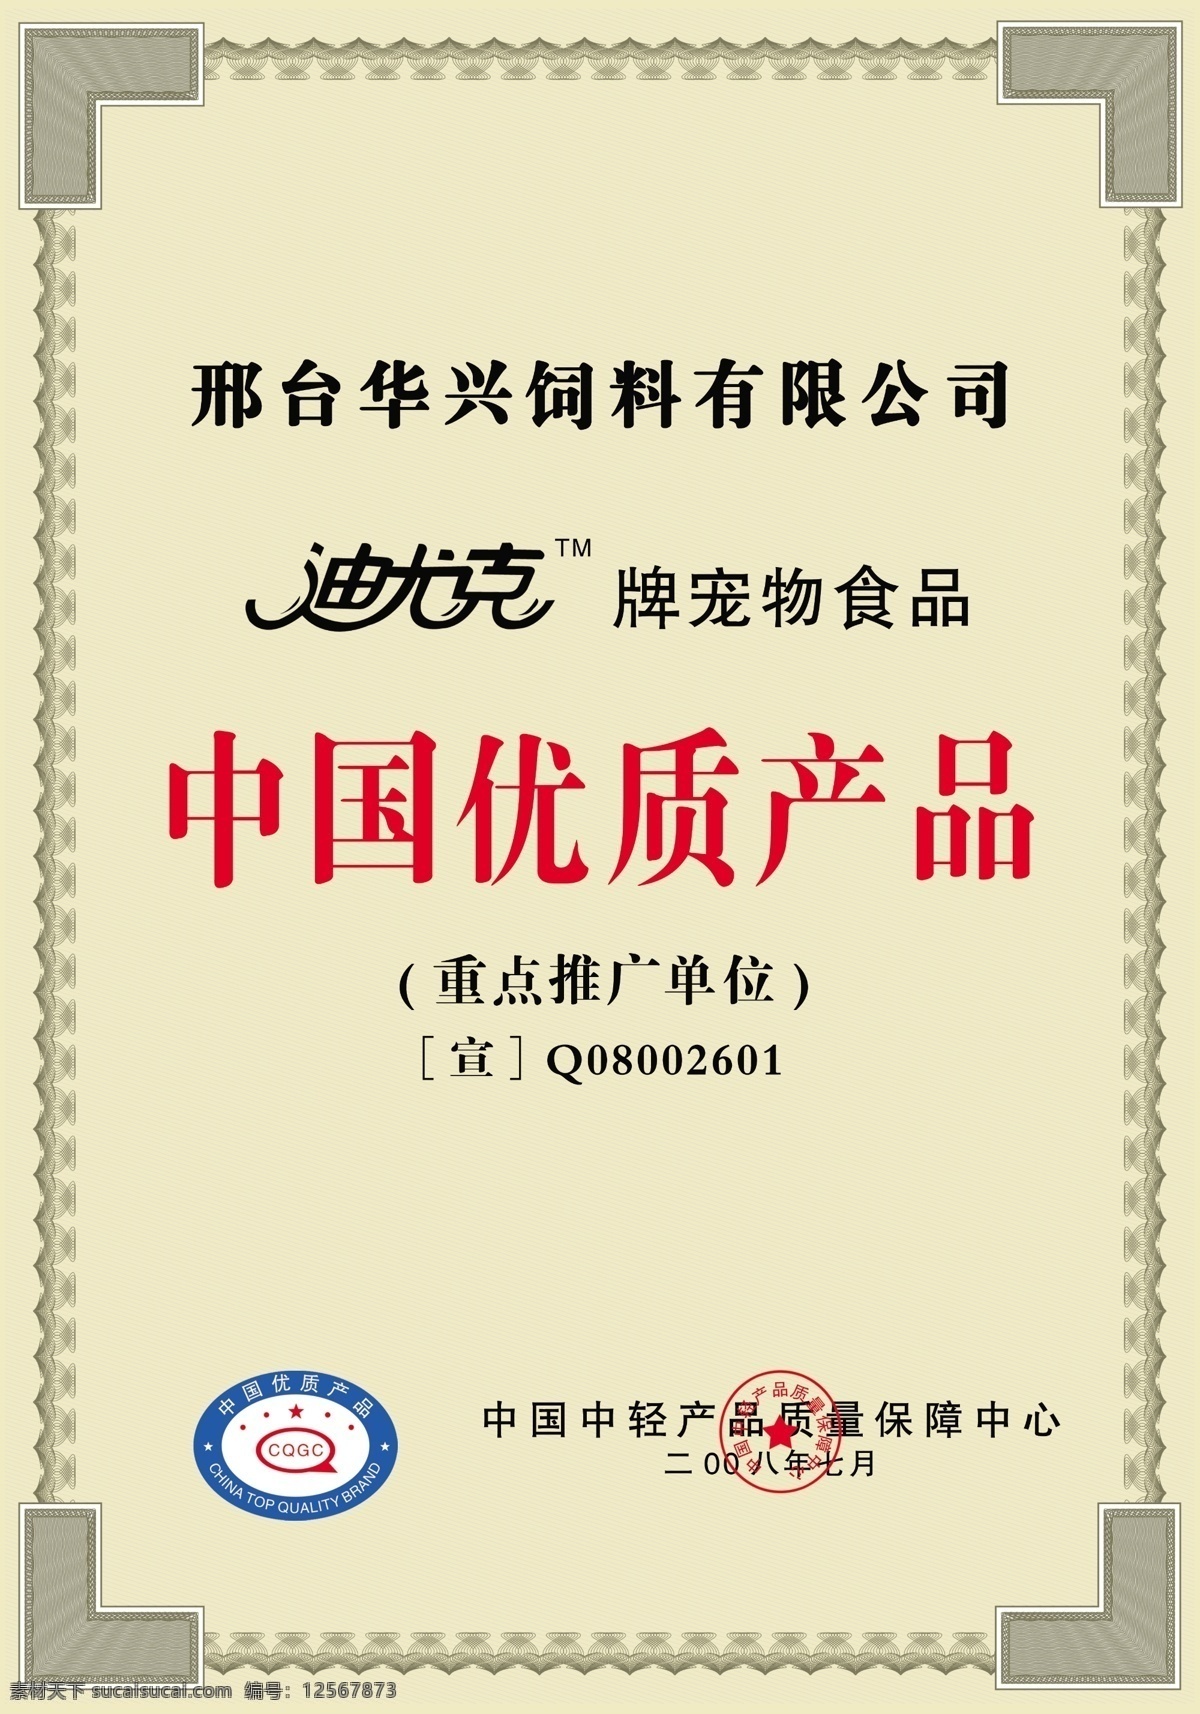 中国优质产品 黄色背景 迪尤克 狗粮 标志 中轻产品质量 保障中心 分层